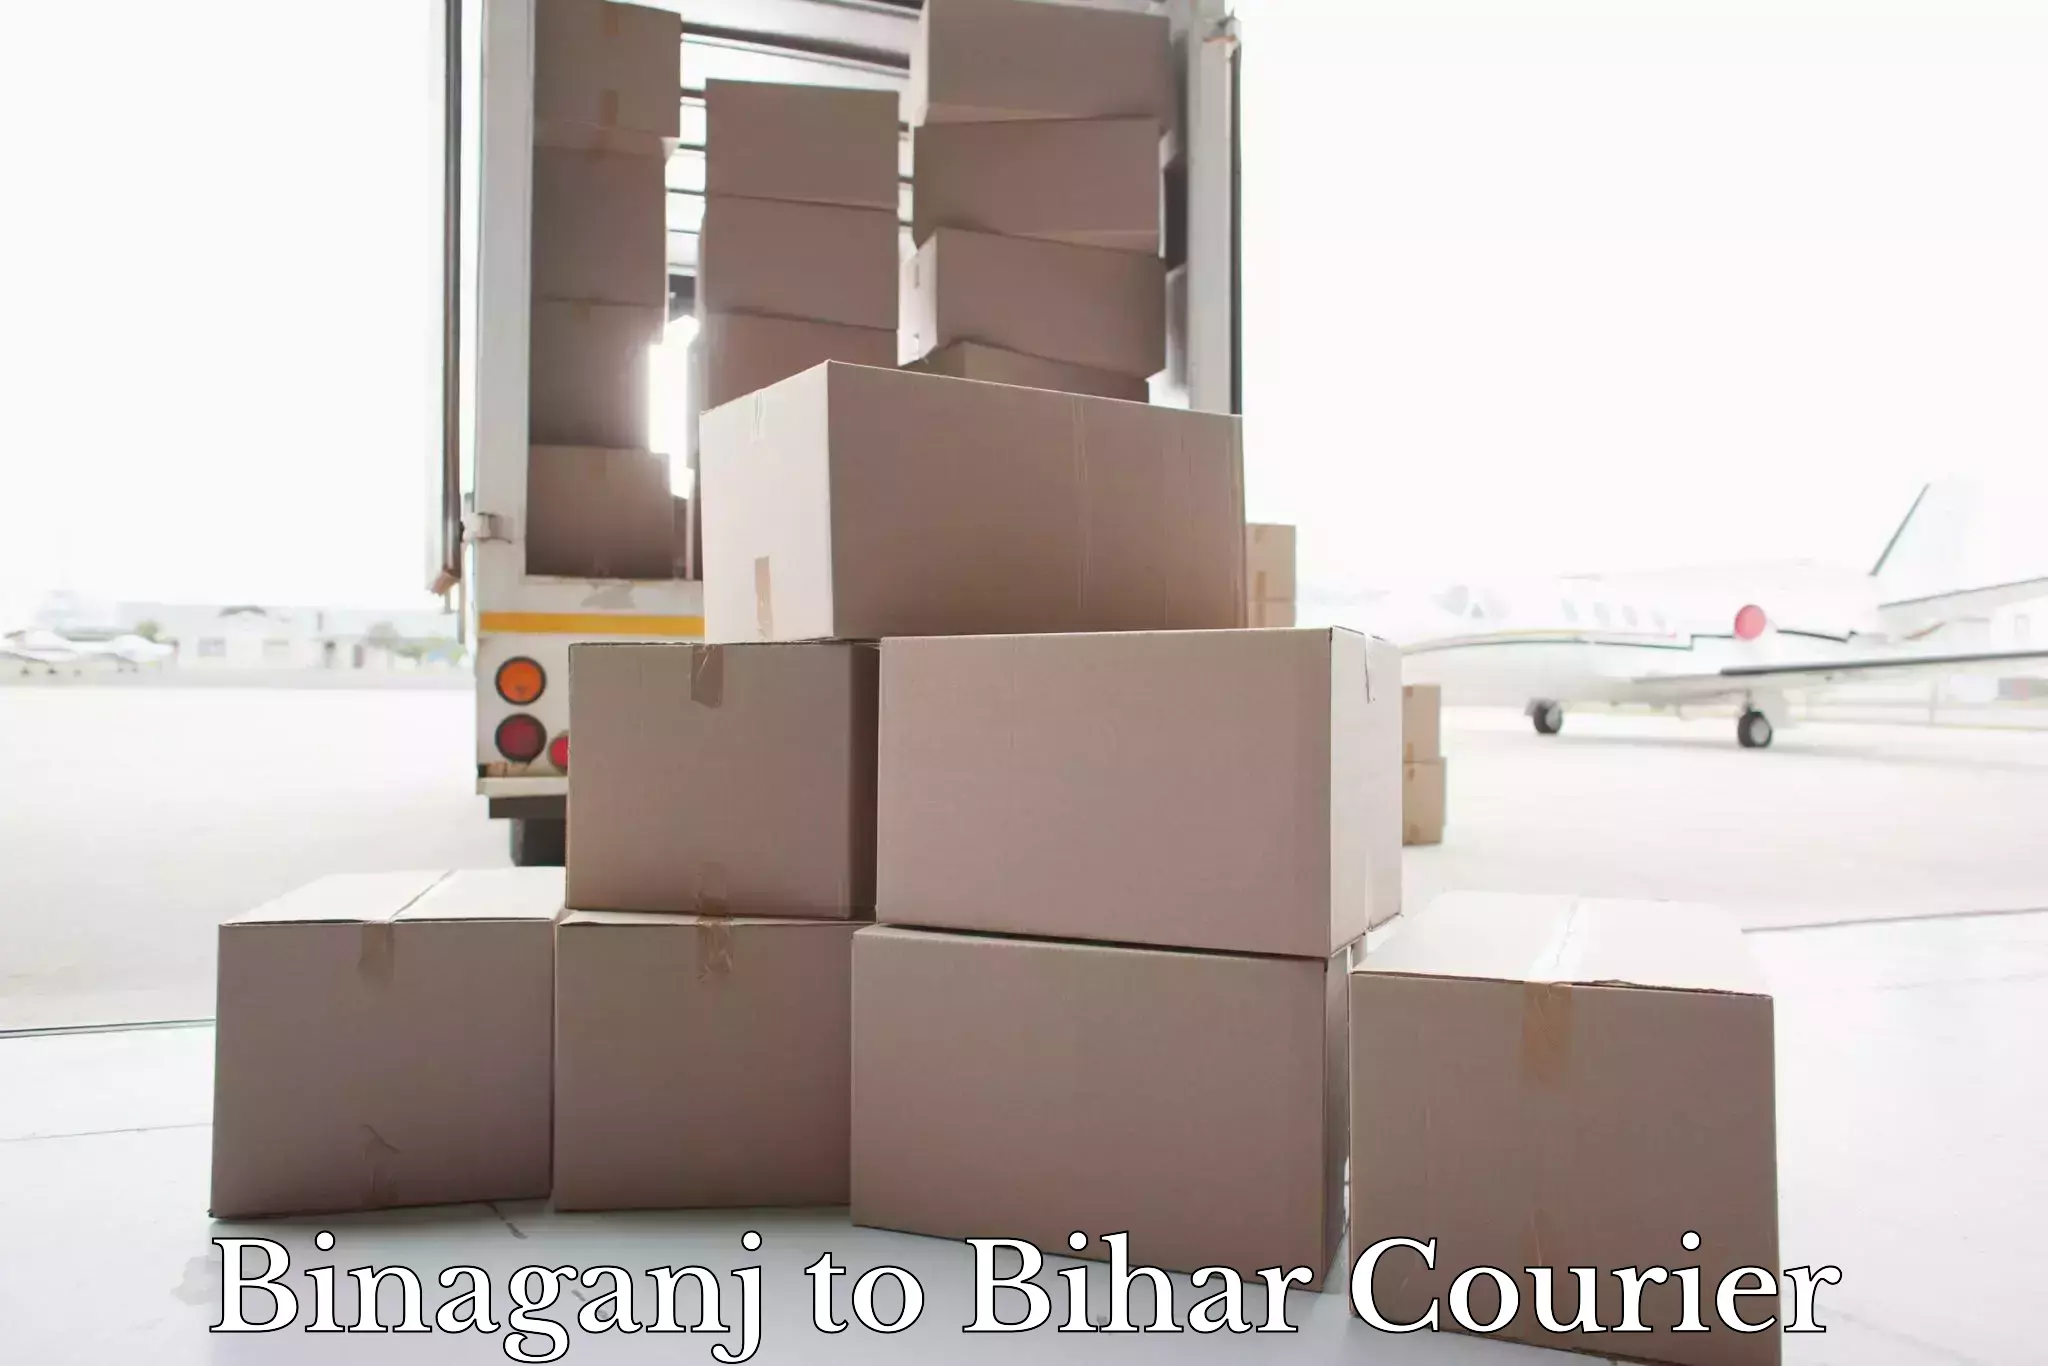 Urban luggage shipping Binaganj to Giddha